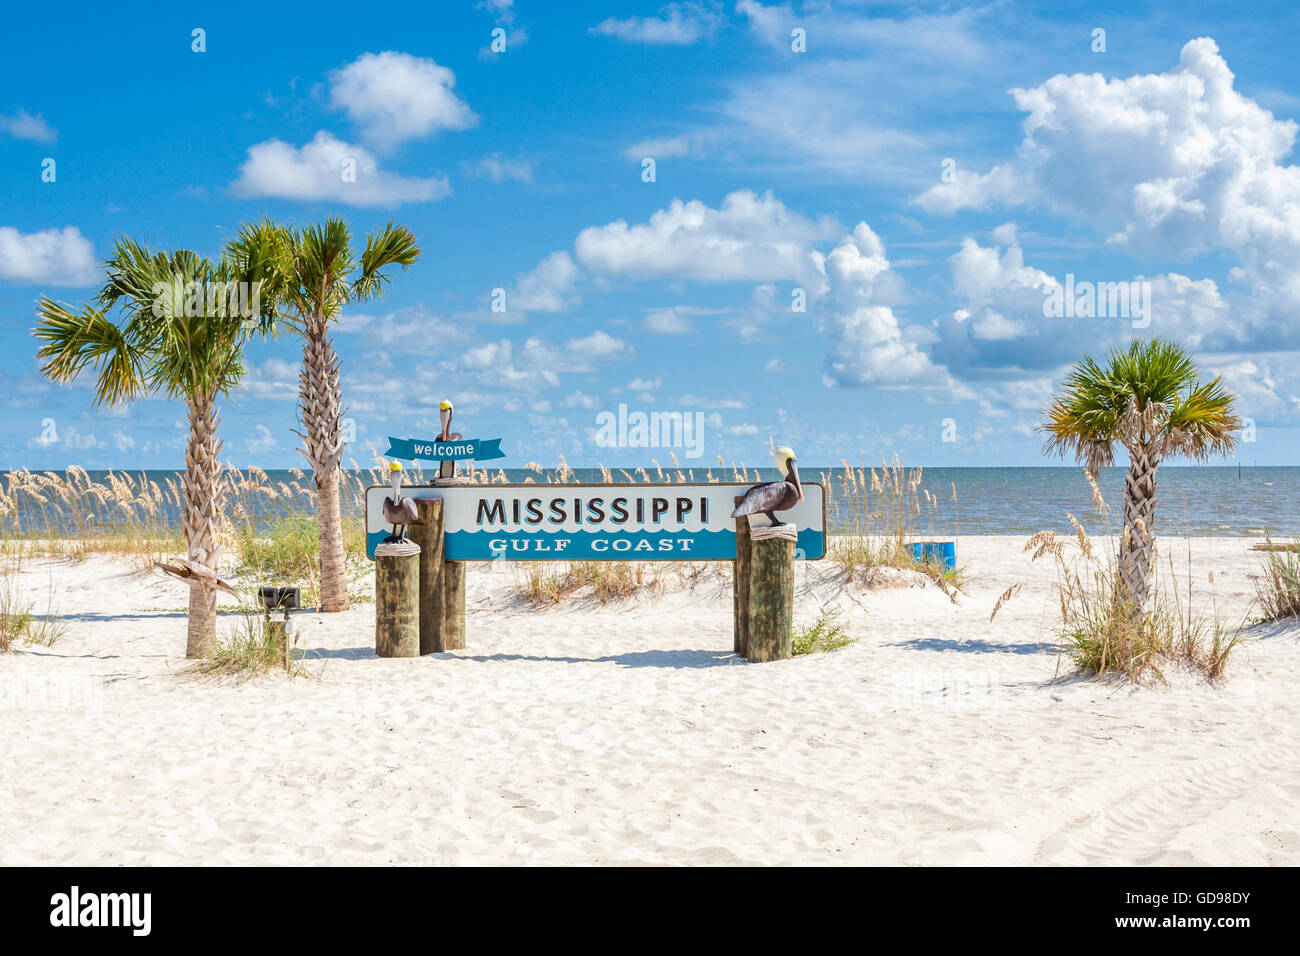 Inscrivez-vous à la plage accueille les visiteurs de la côte du golfe du Mississippi à Gulfport, Mississippi Banque D'Images